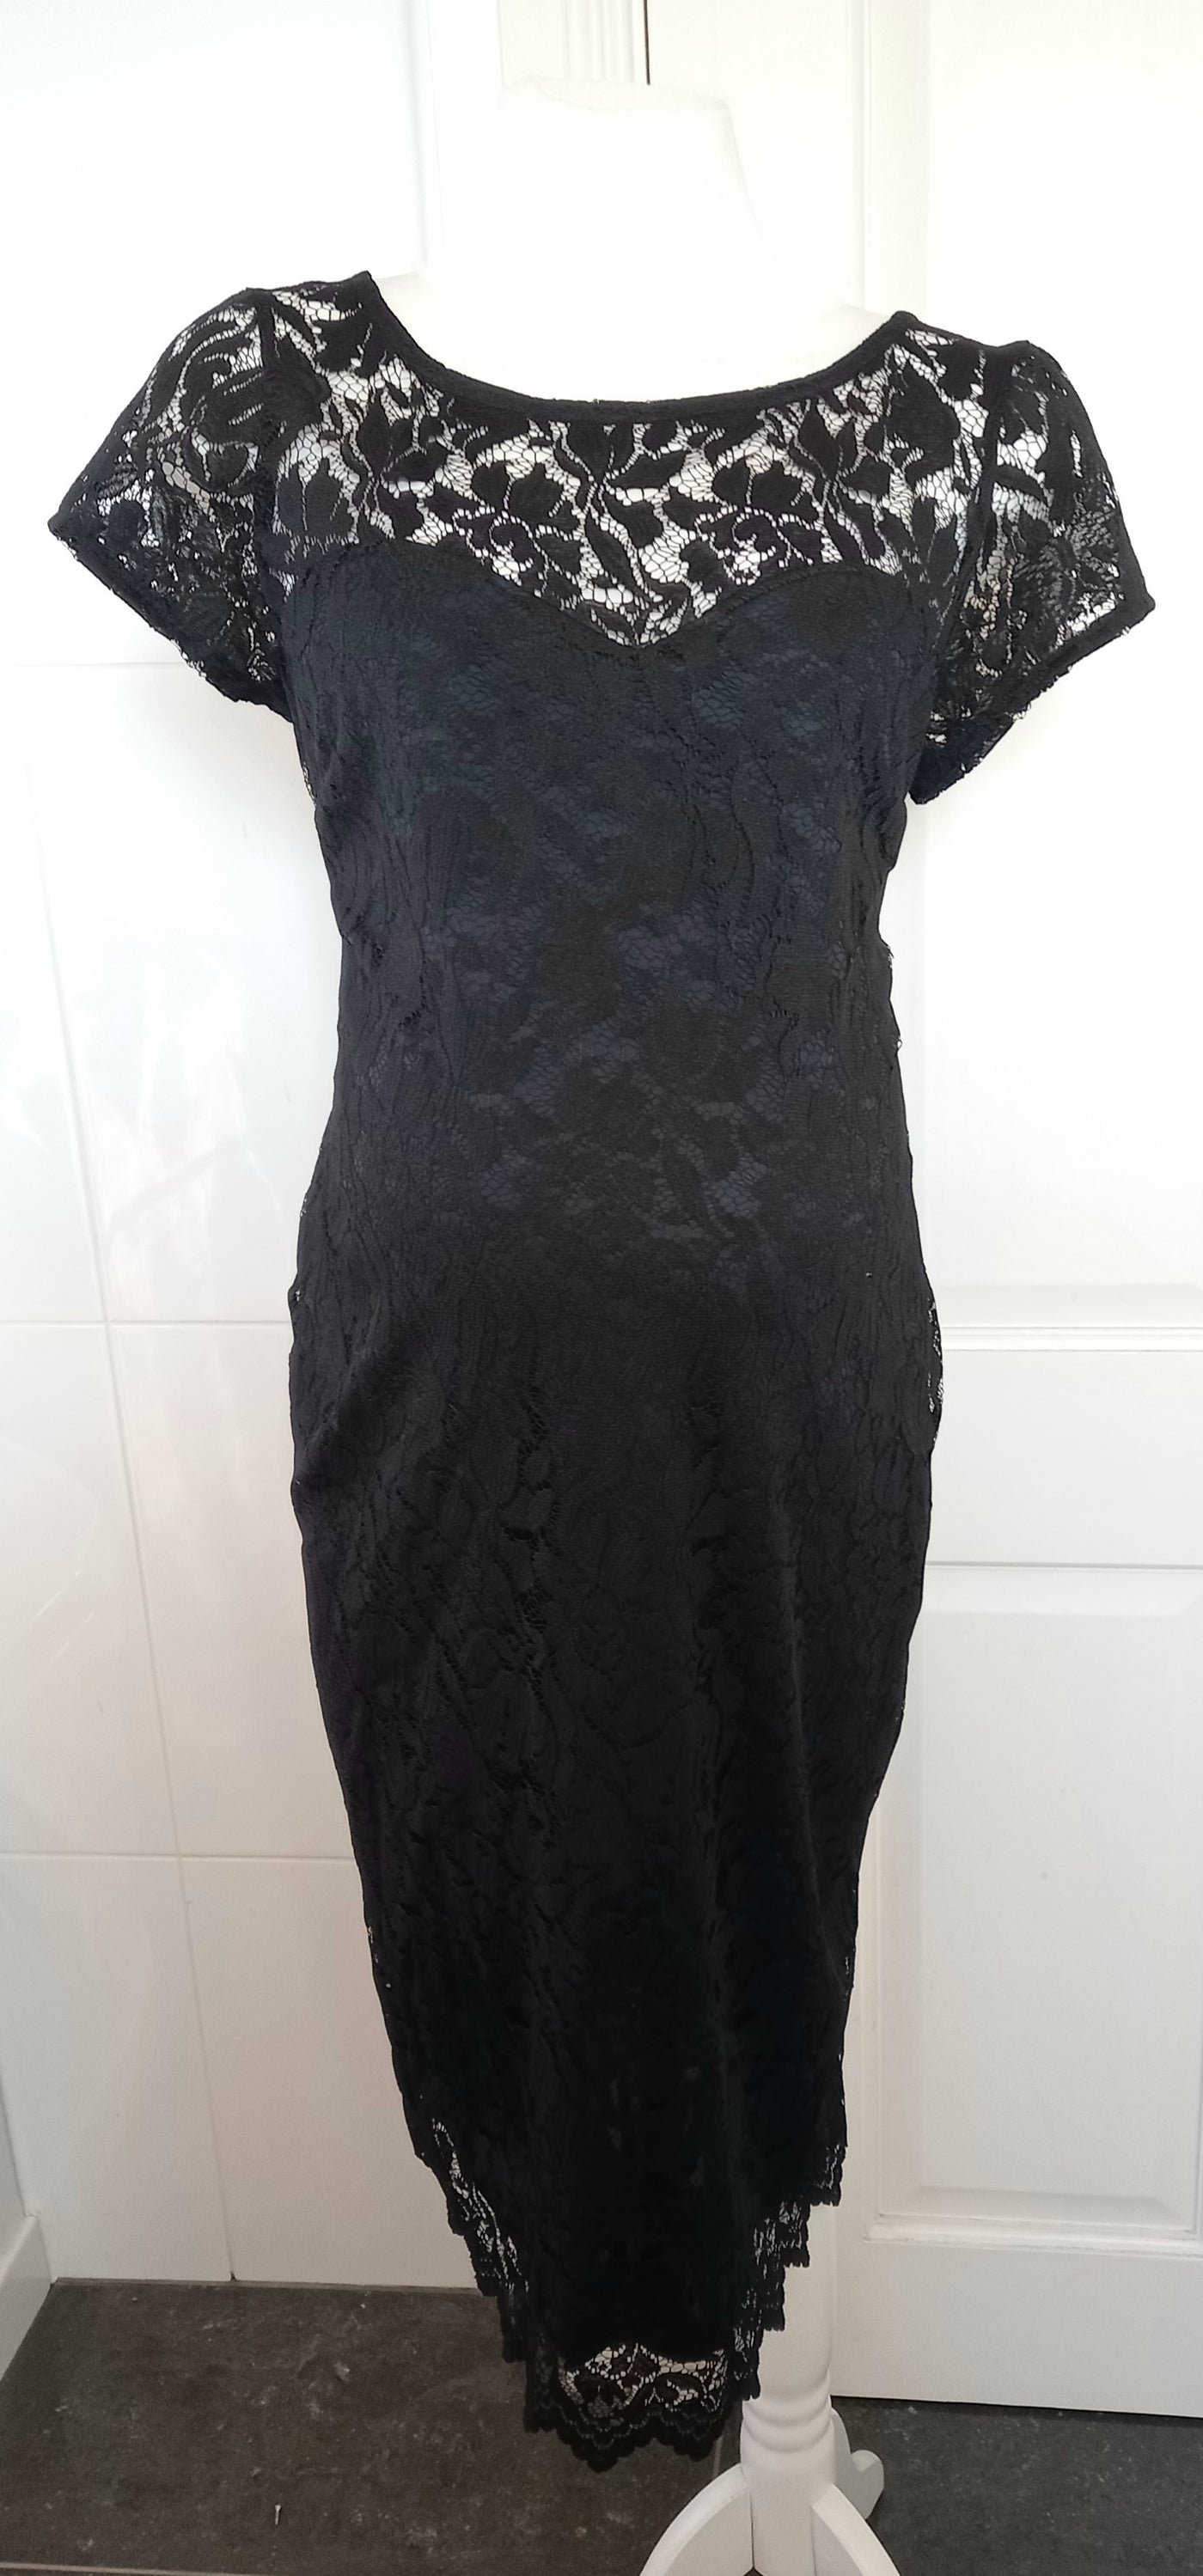 Next Maternity Black Lace Dress - Size 14